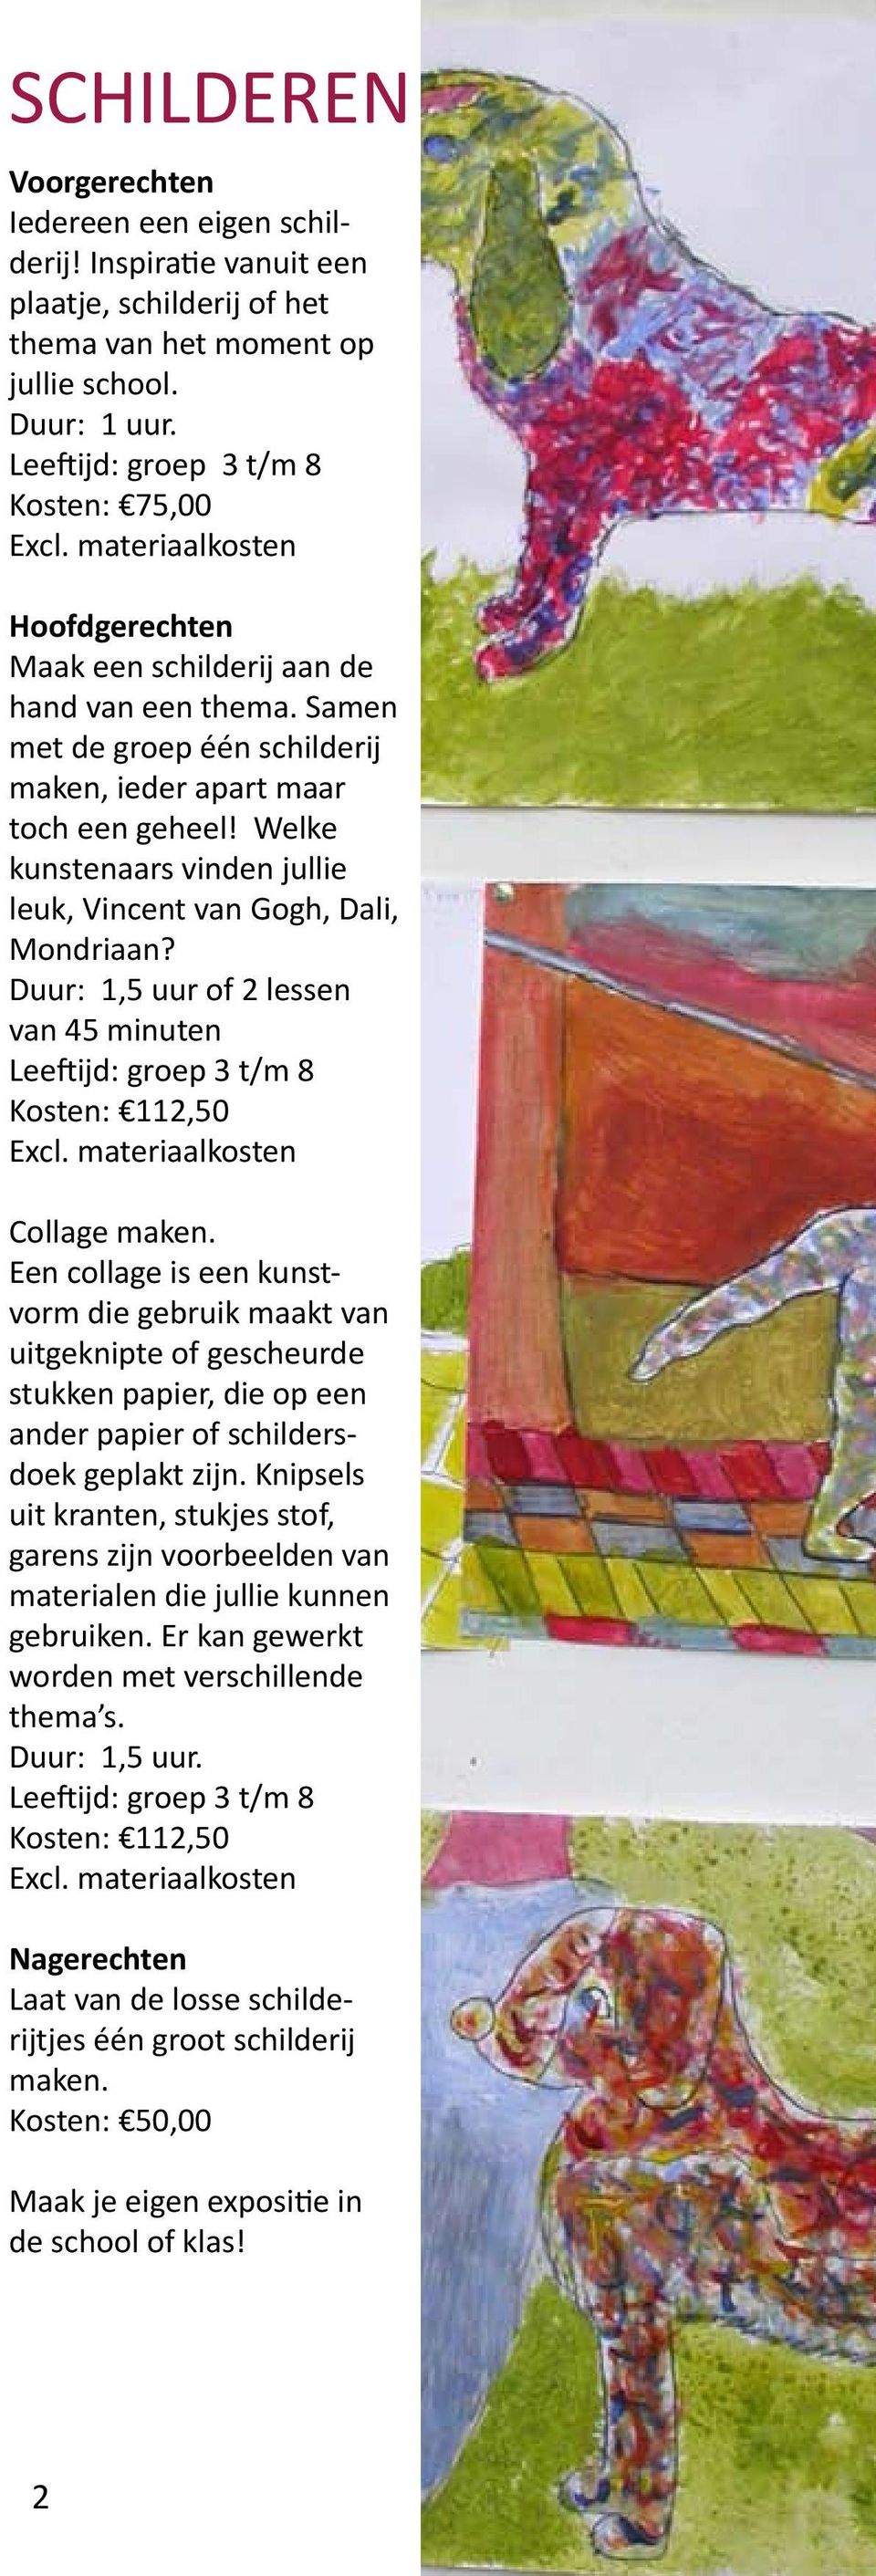 Welke kunstenaars vinden jullie leuk, Vincent van Gogh, Dali, Mondriaan? of 2 lessen van 45 minuten Collage maken.